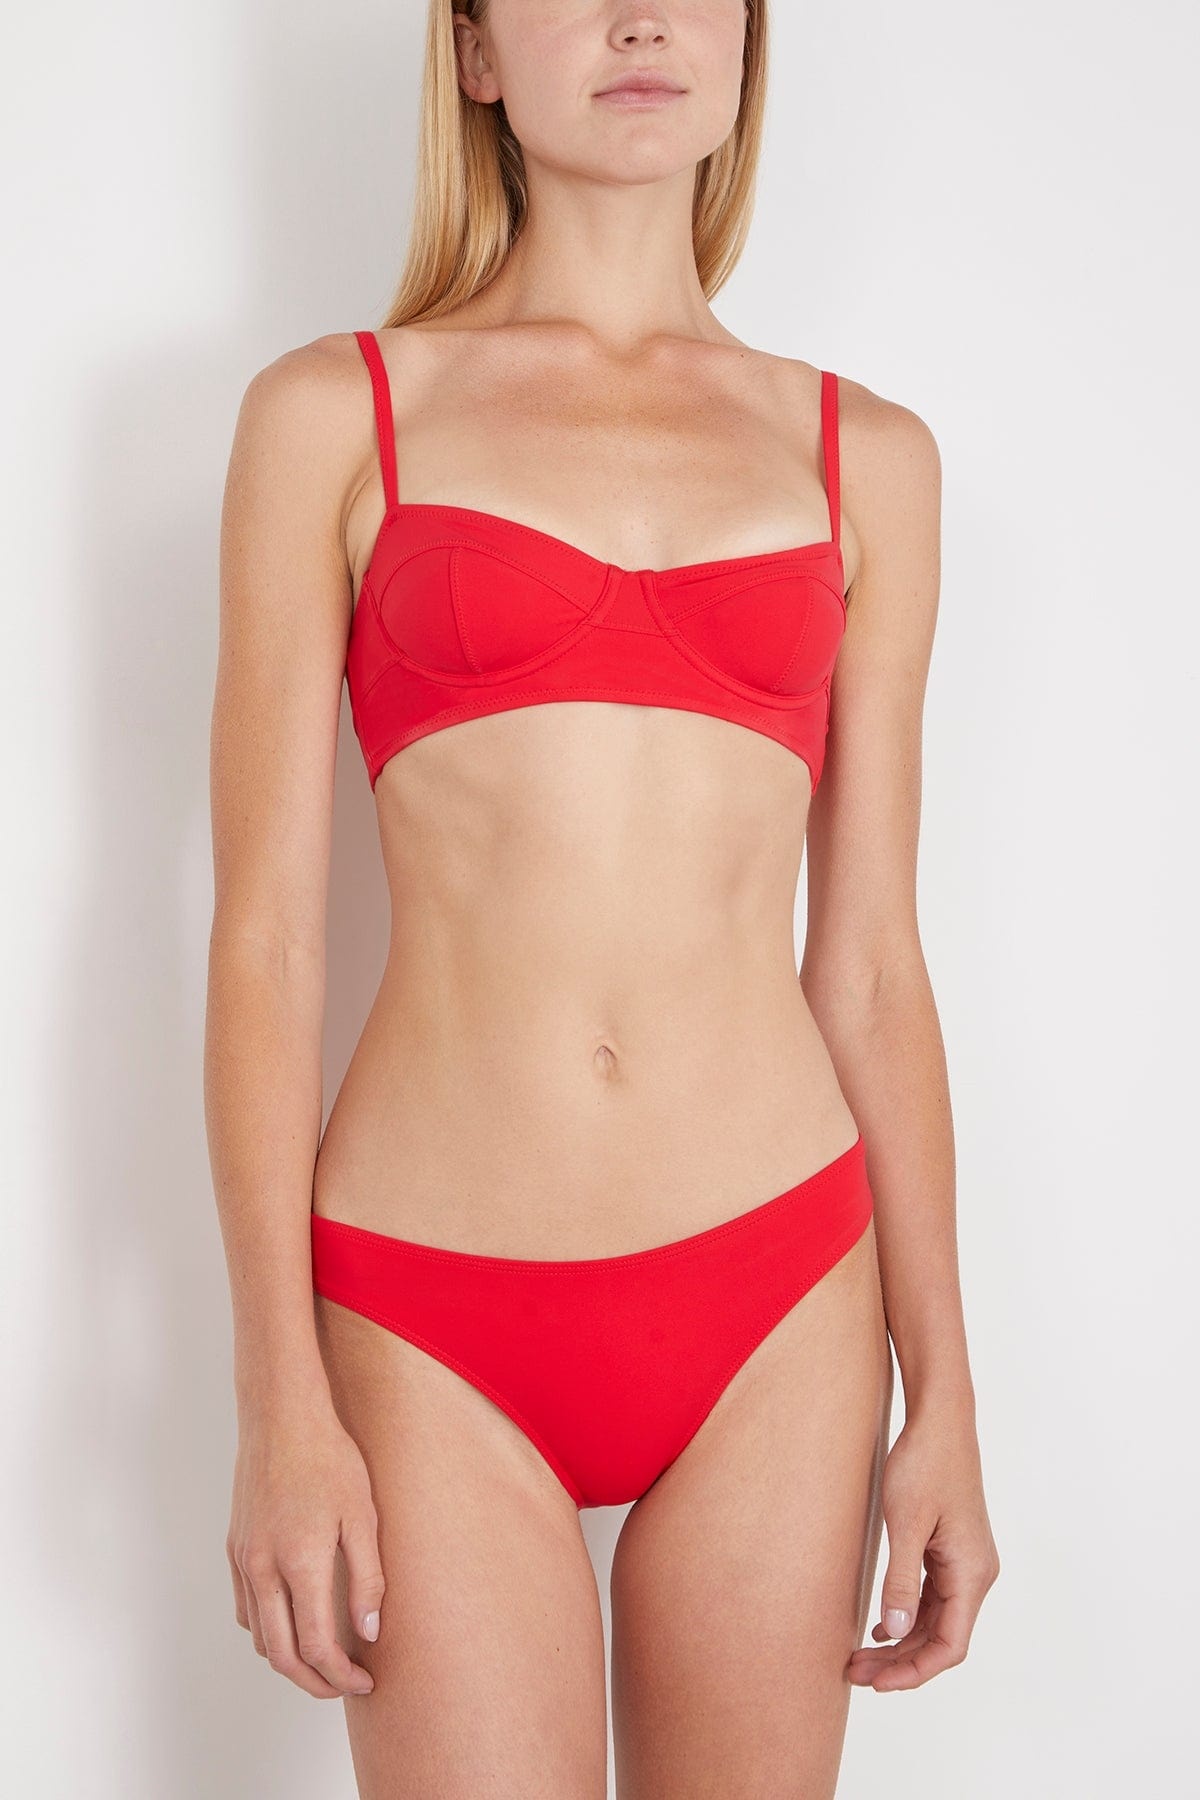 Zahara Bikini Top in Scarlet - 3